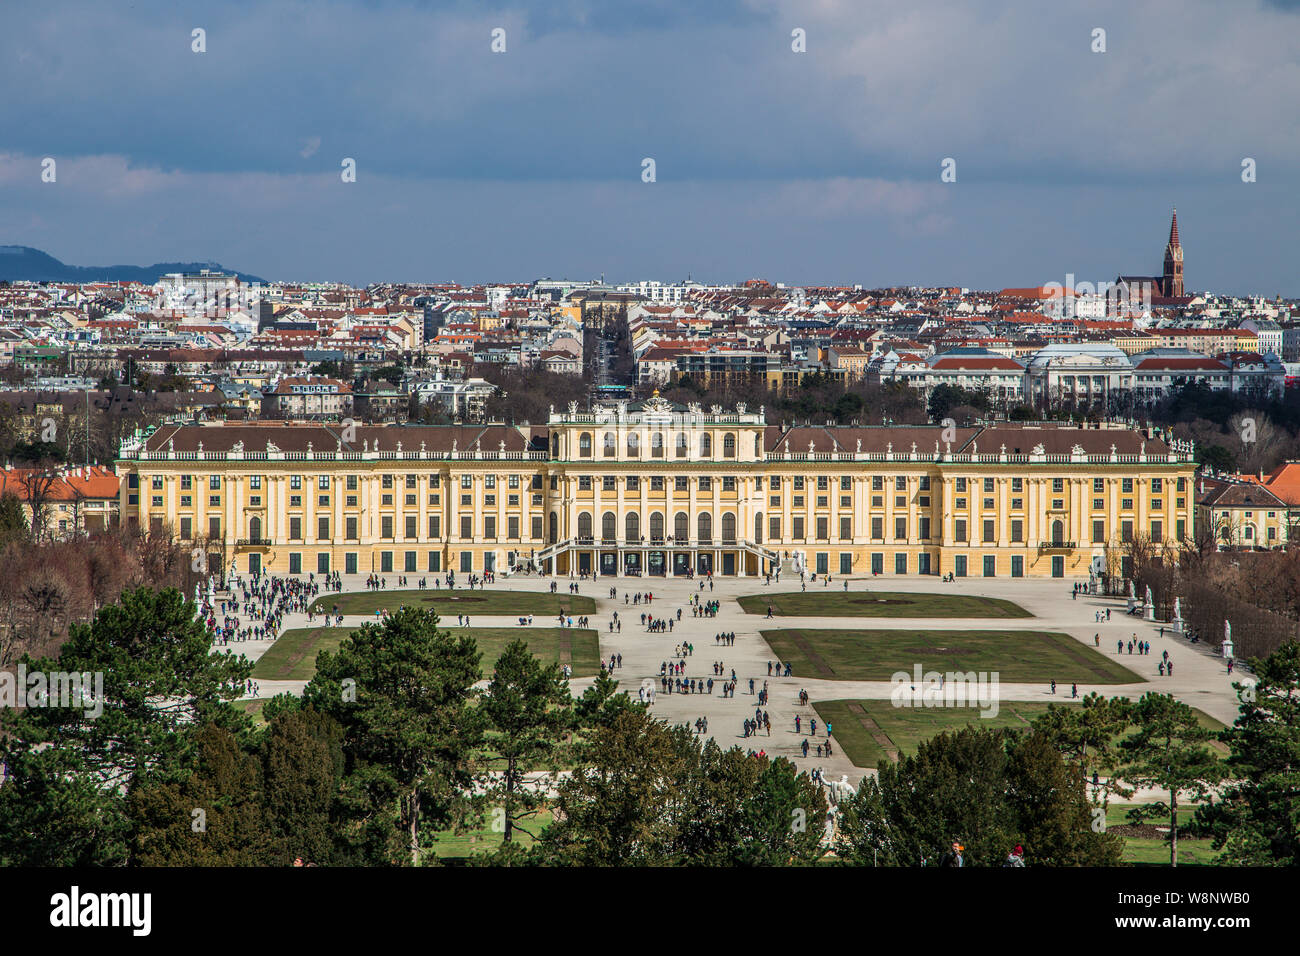 El palacio de Schönbrunn en Viena, Austria, vista desde la colina Foto de stock